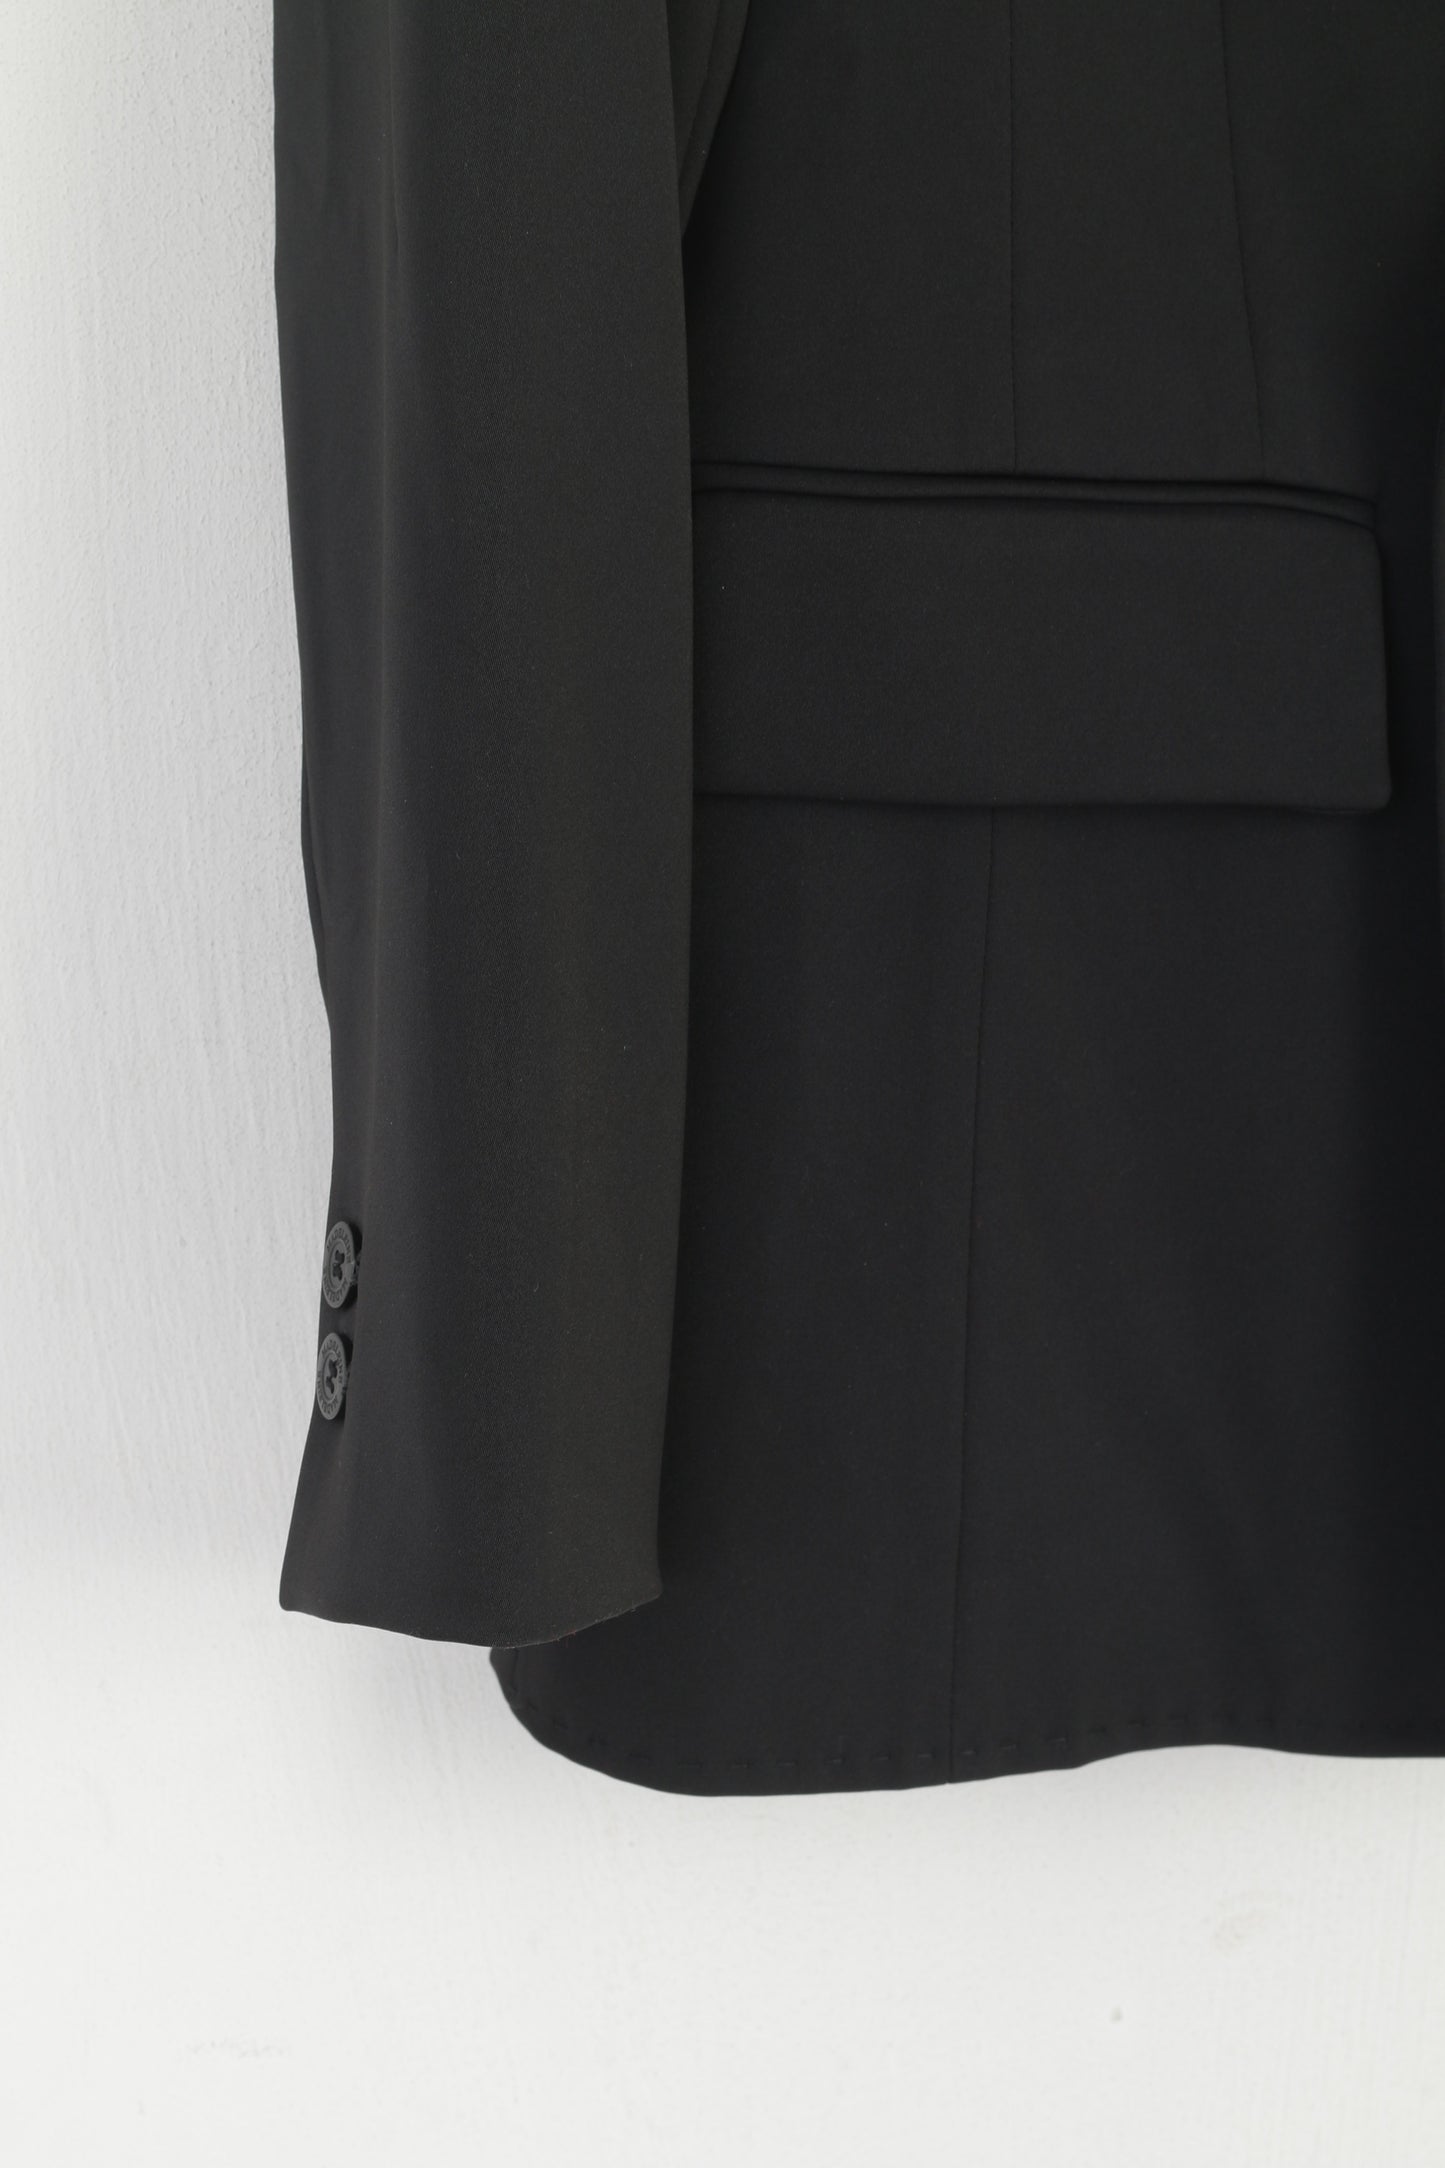 Madeleine femmes 10 38 S/M Blazer noir brillant Double boutonnage boutons détaillés veste